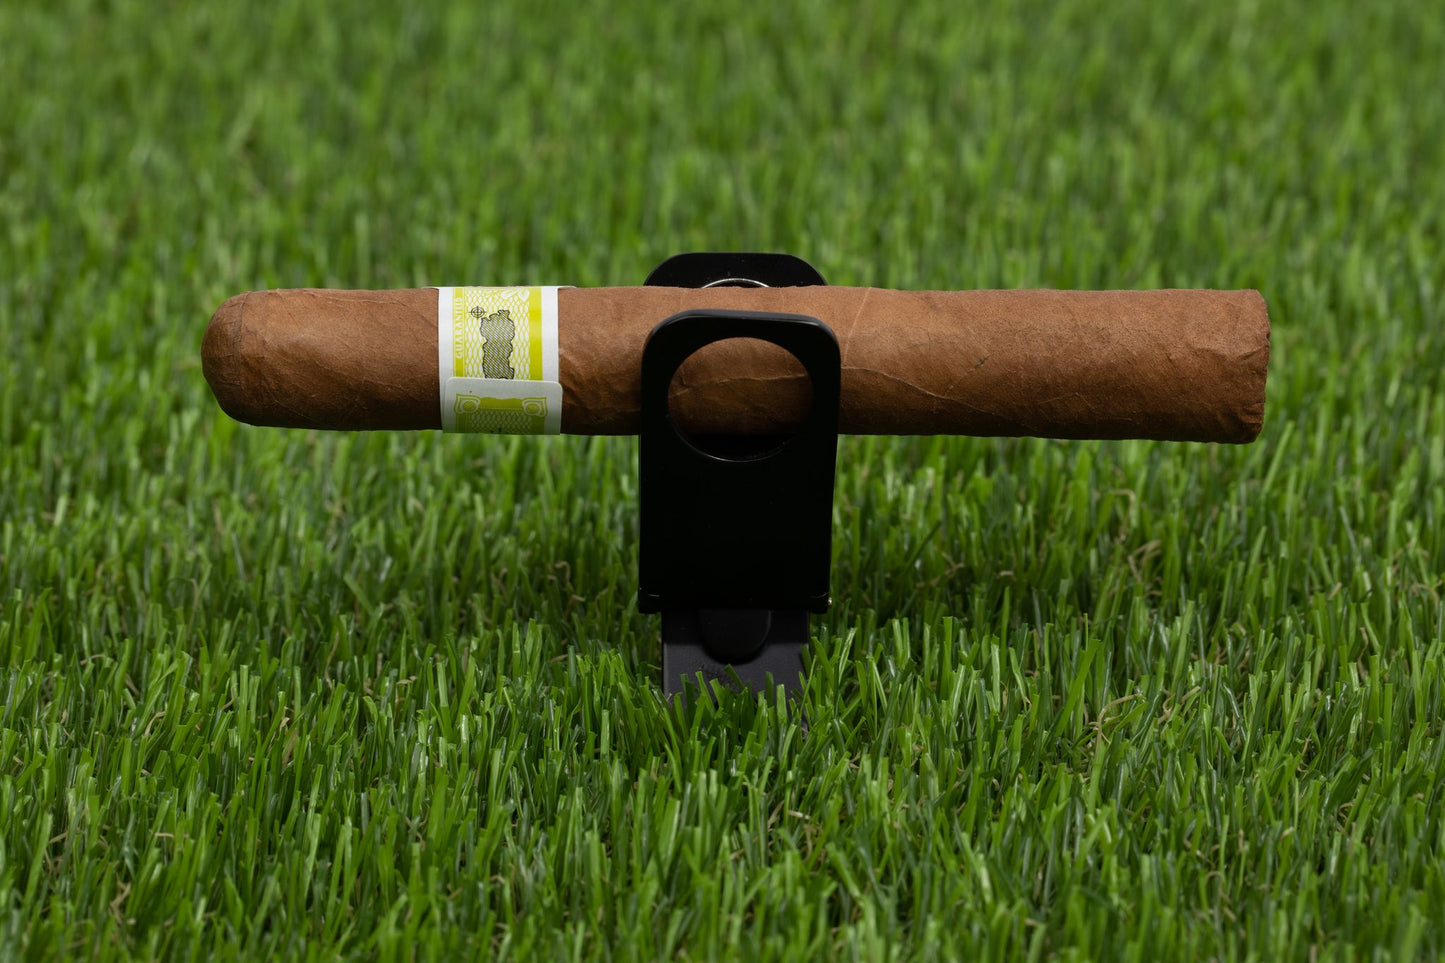 Magnetic Cigar Holder - 6 in 1 Divot Tool